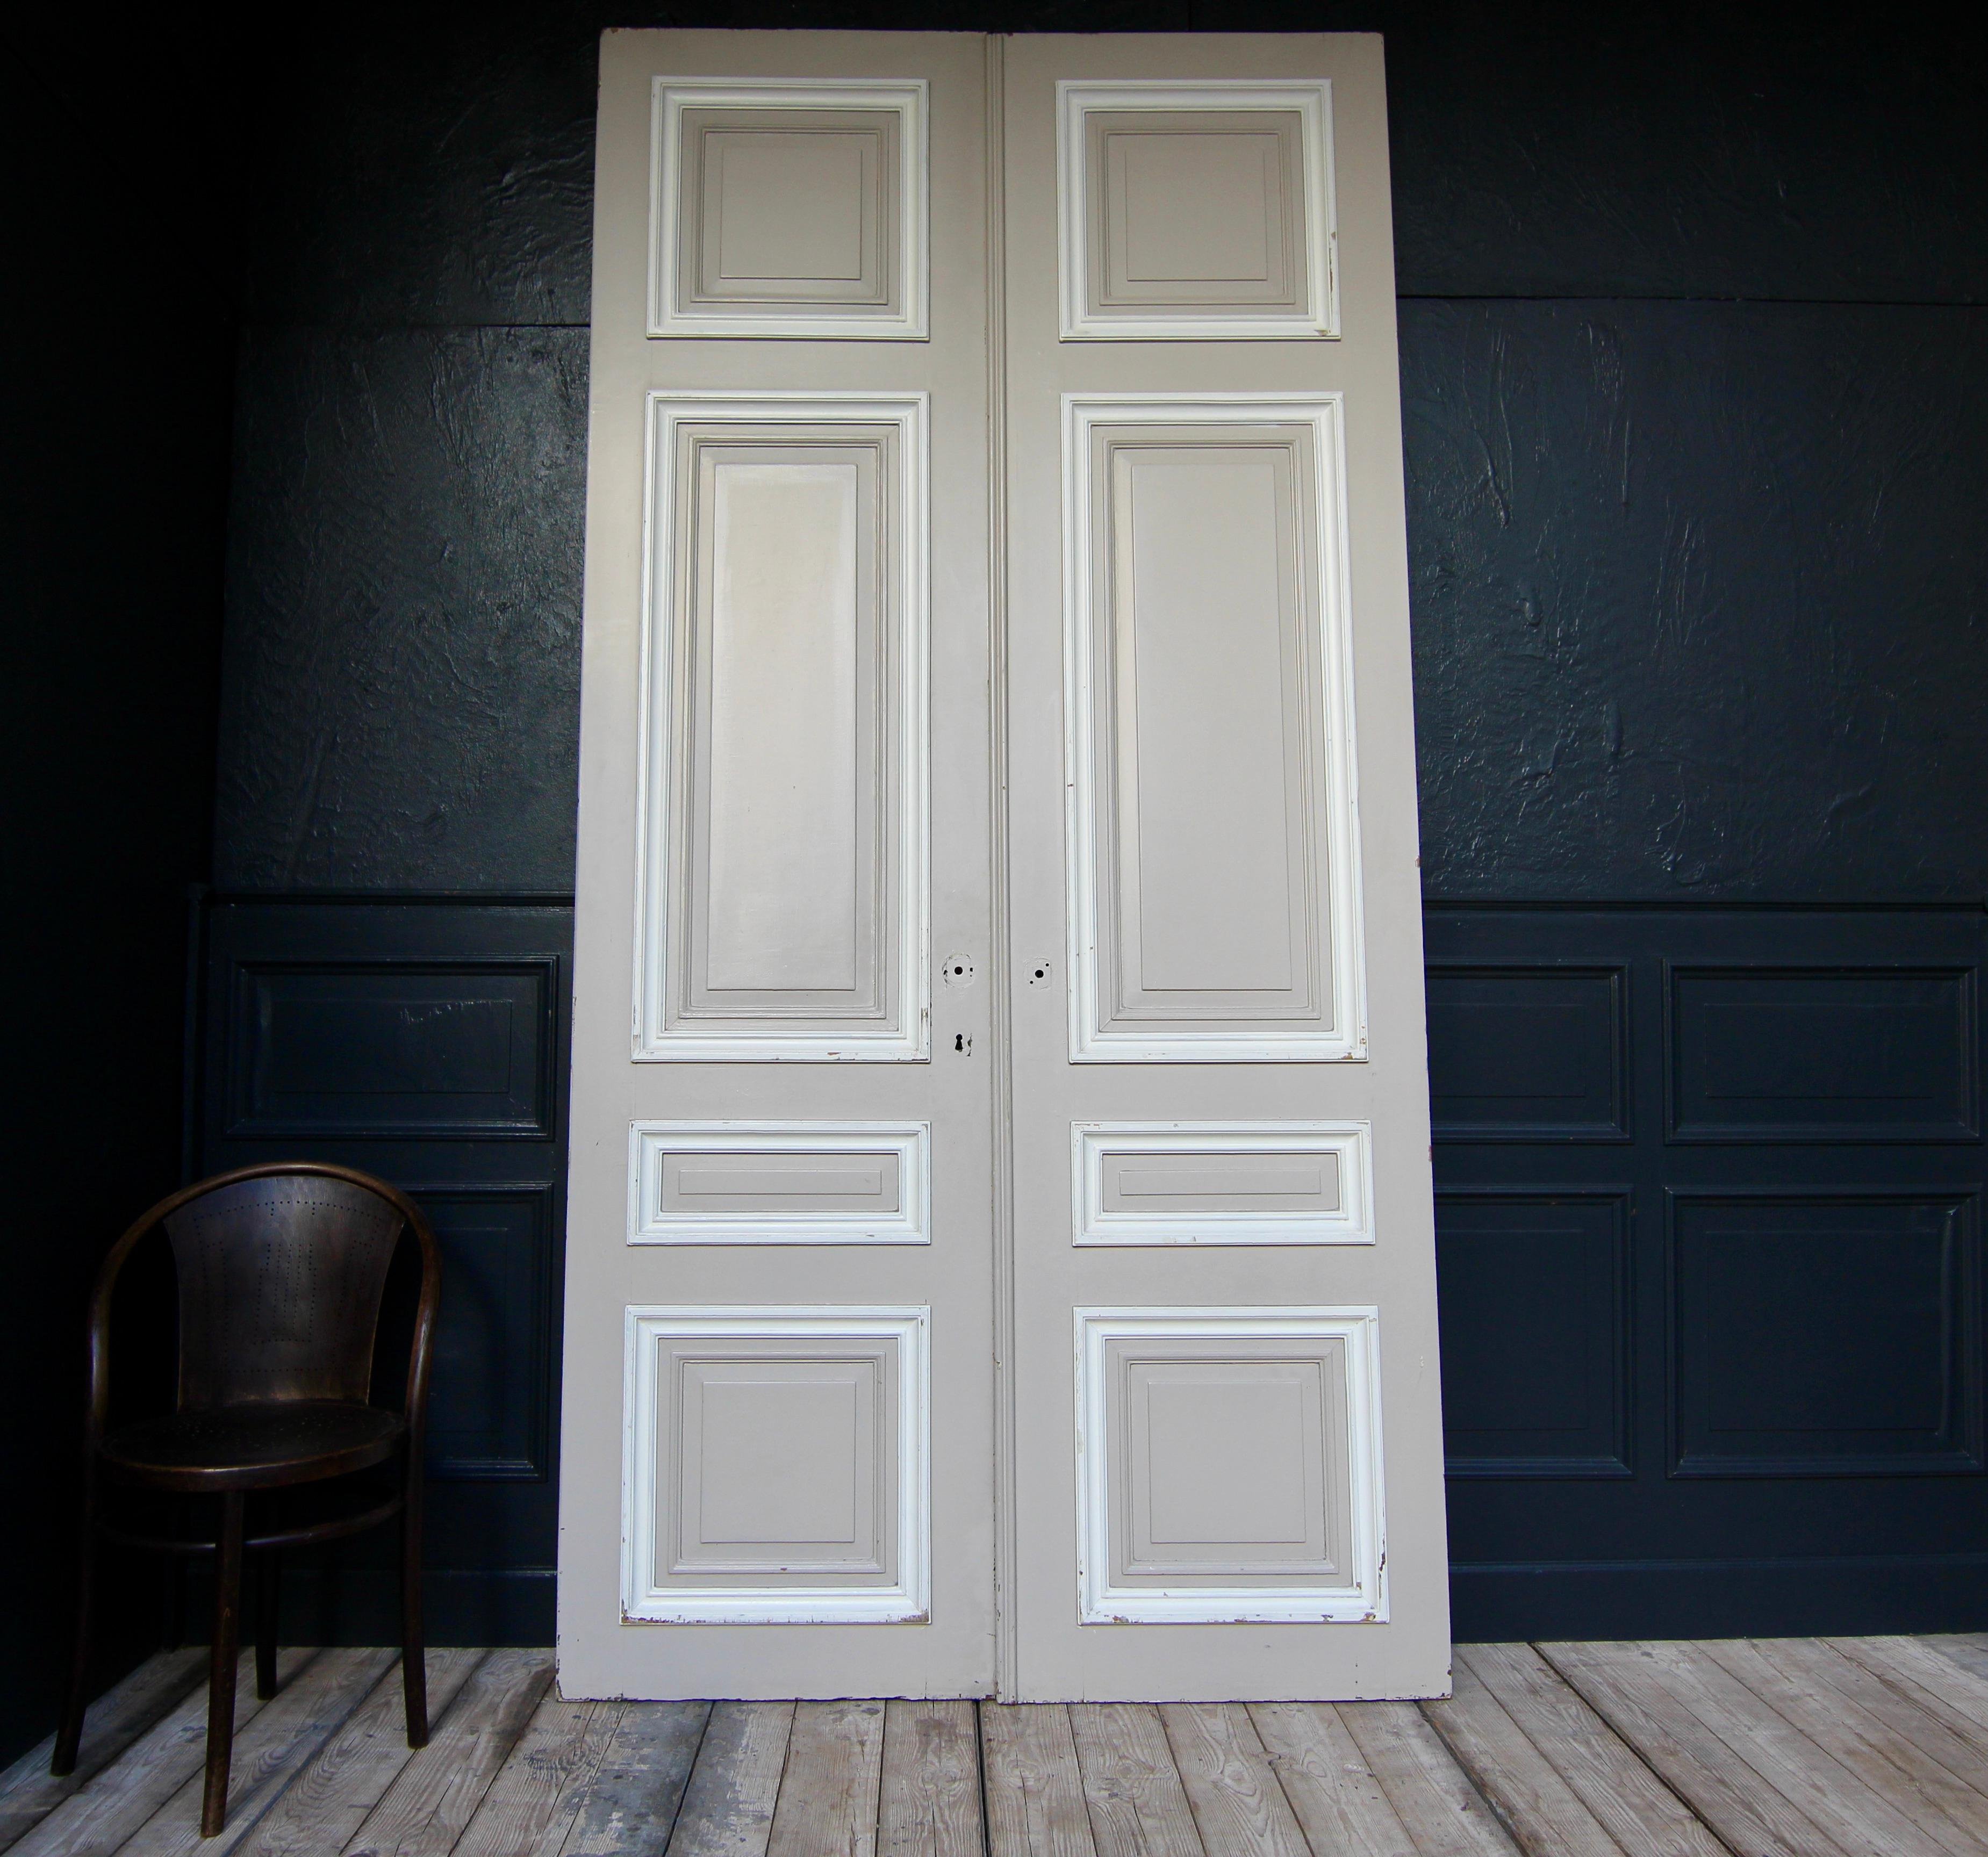 Hohe französische Doppeltür aus der 1. Hälfte des 20. Jahrhunderts. Hergestellt aus Eiche und lackiert. Unrestaurierter Zustand.

Doppeltür in Rahmenkonstruktion mit je 4 Kassettenfeldern.

Beide Seiten in taupefarbener Farbe, jeweils mit weißen